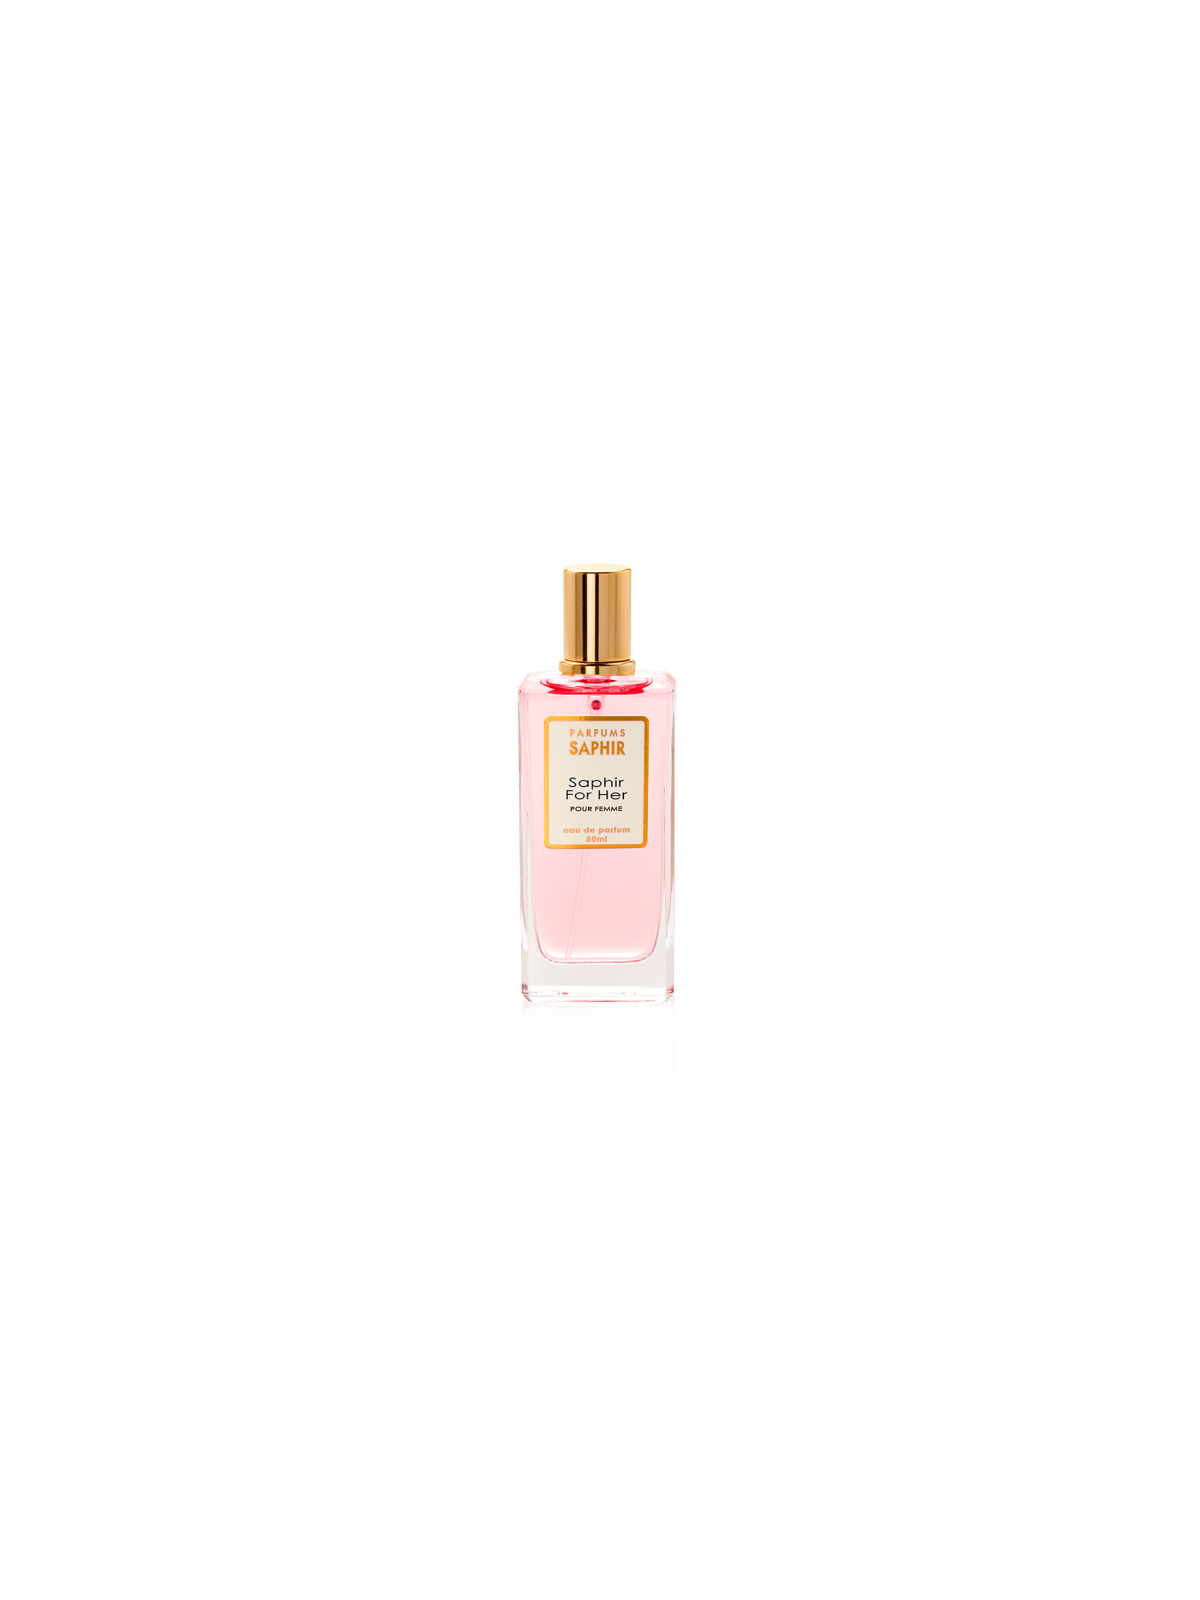 Comprar Perfume SAPHIR for Her 50ml. en Perfumes para mujer por sólo 4,95 € o un precio específico de 4,95 € en Thalie Care